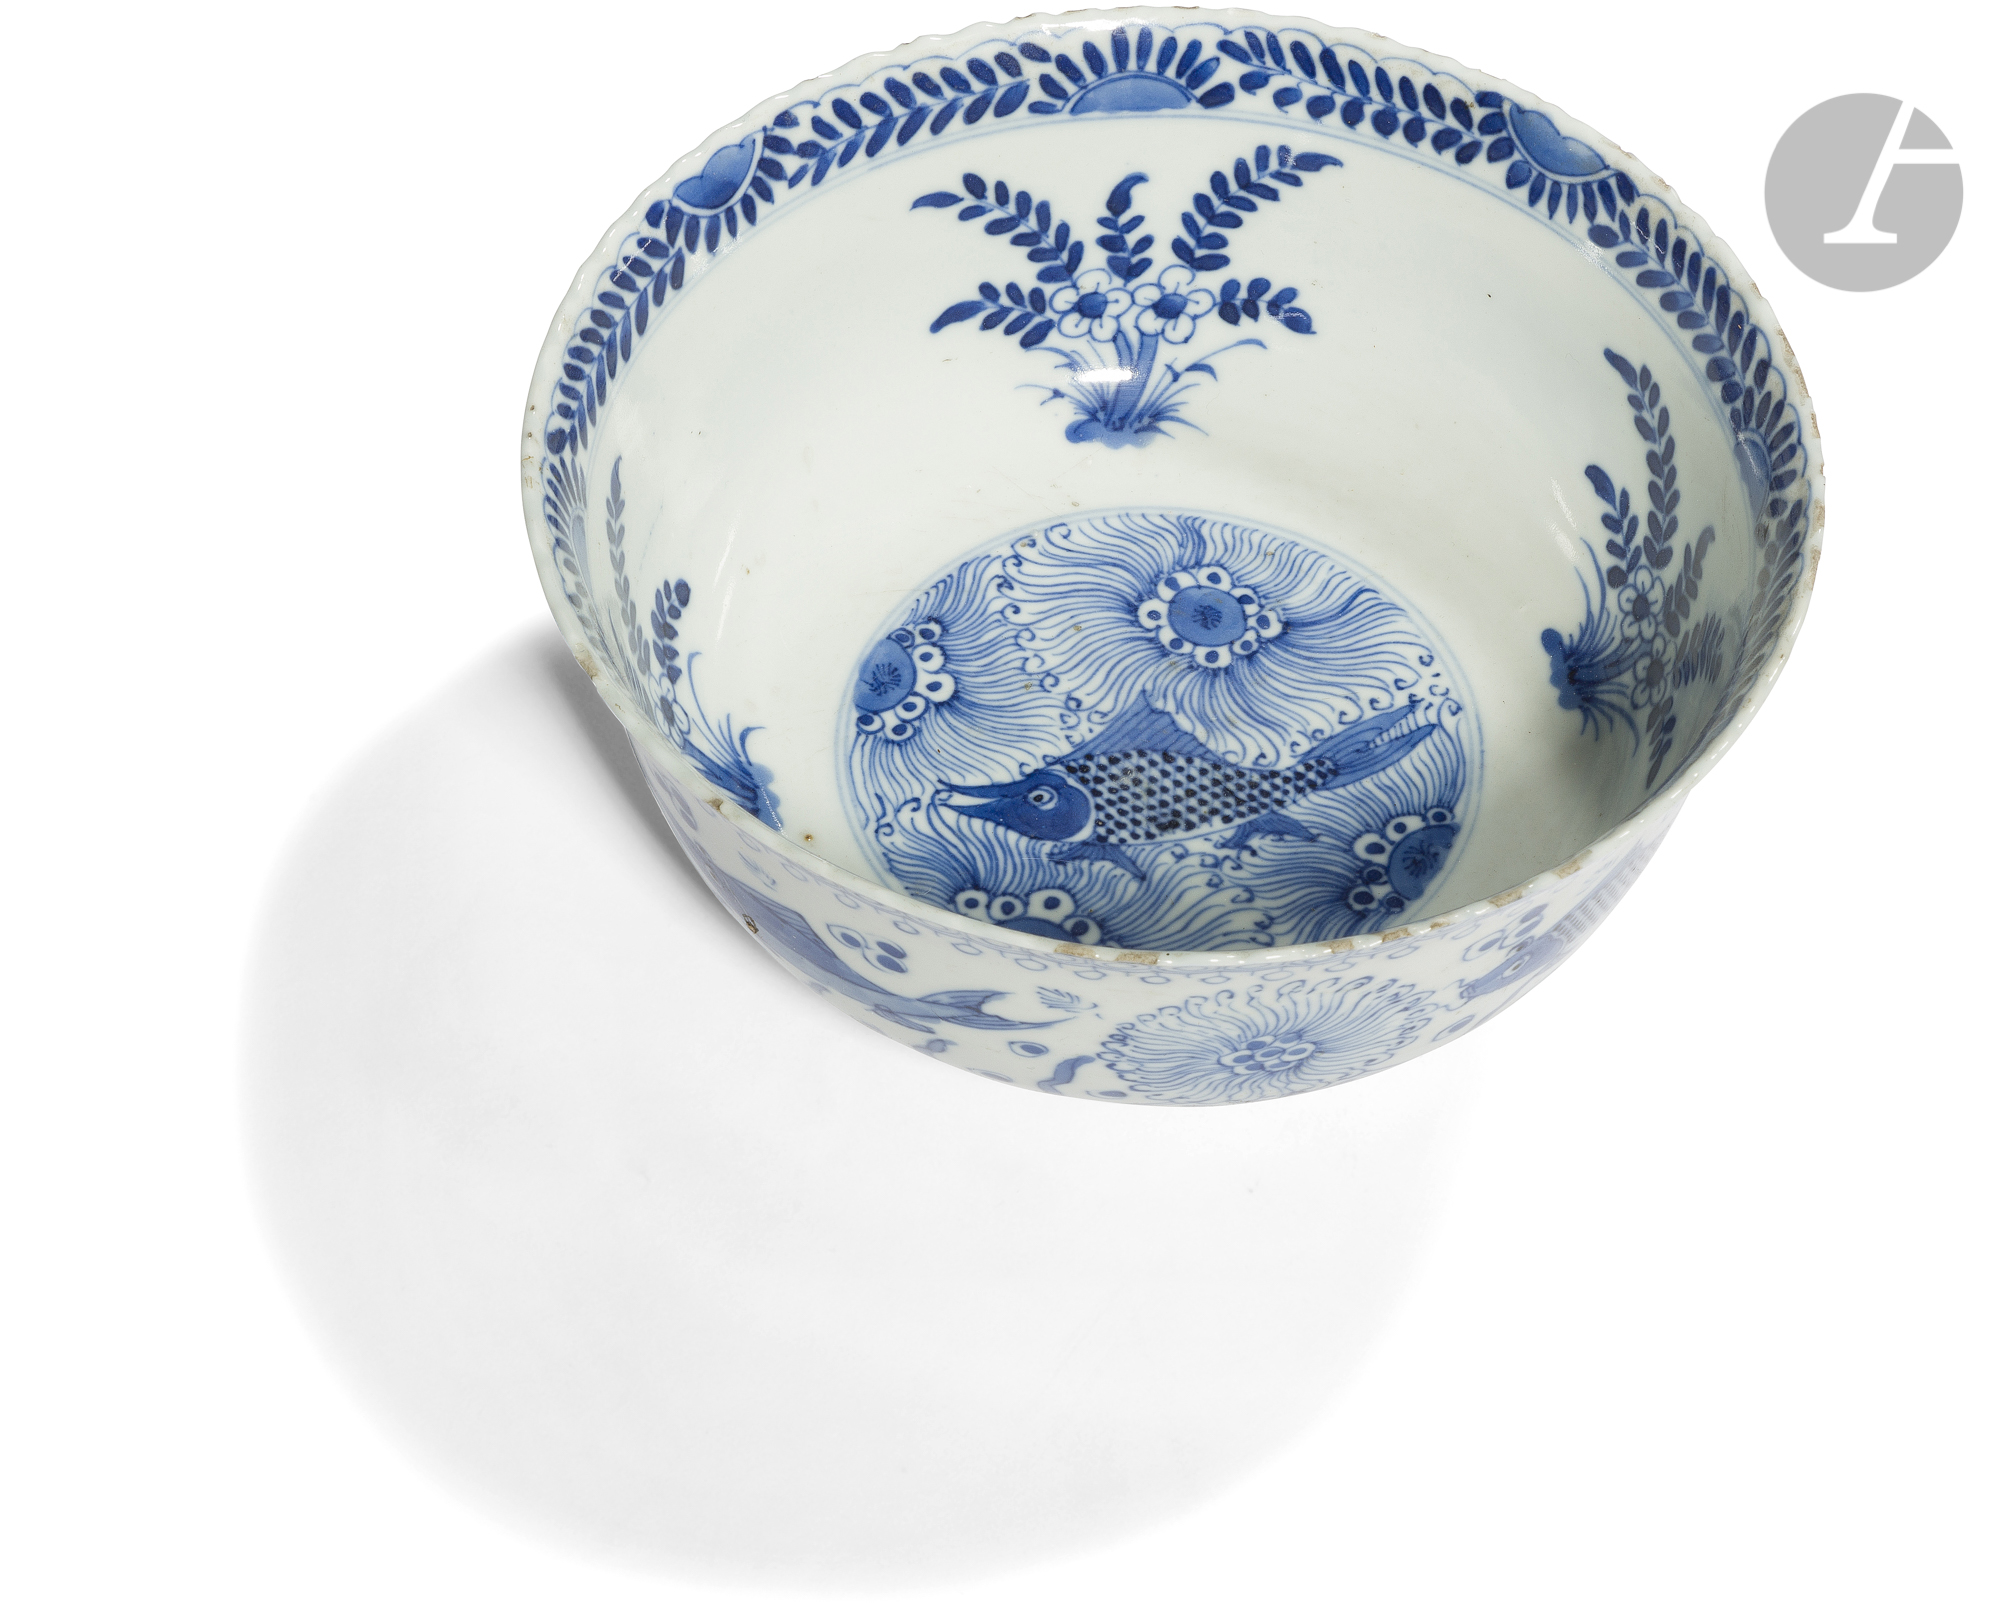 CHINE - Époque KANGXI (1662 - 1722) Bol à bordure chantournée en porcelaine blanche émaillée en bleu - Image 2 of 2